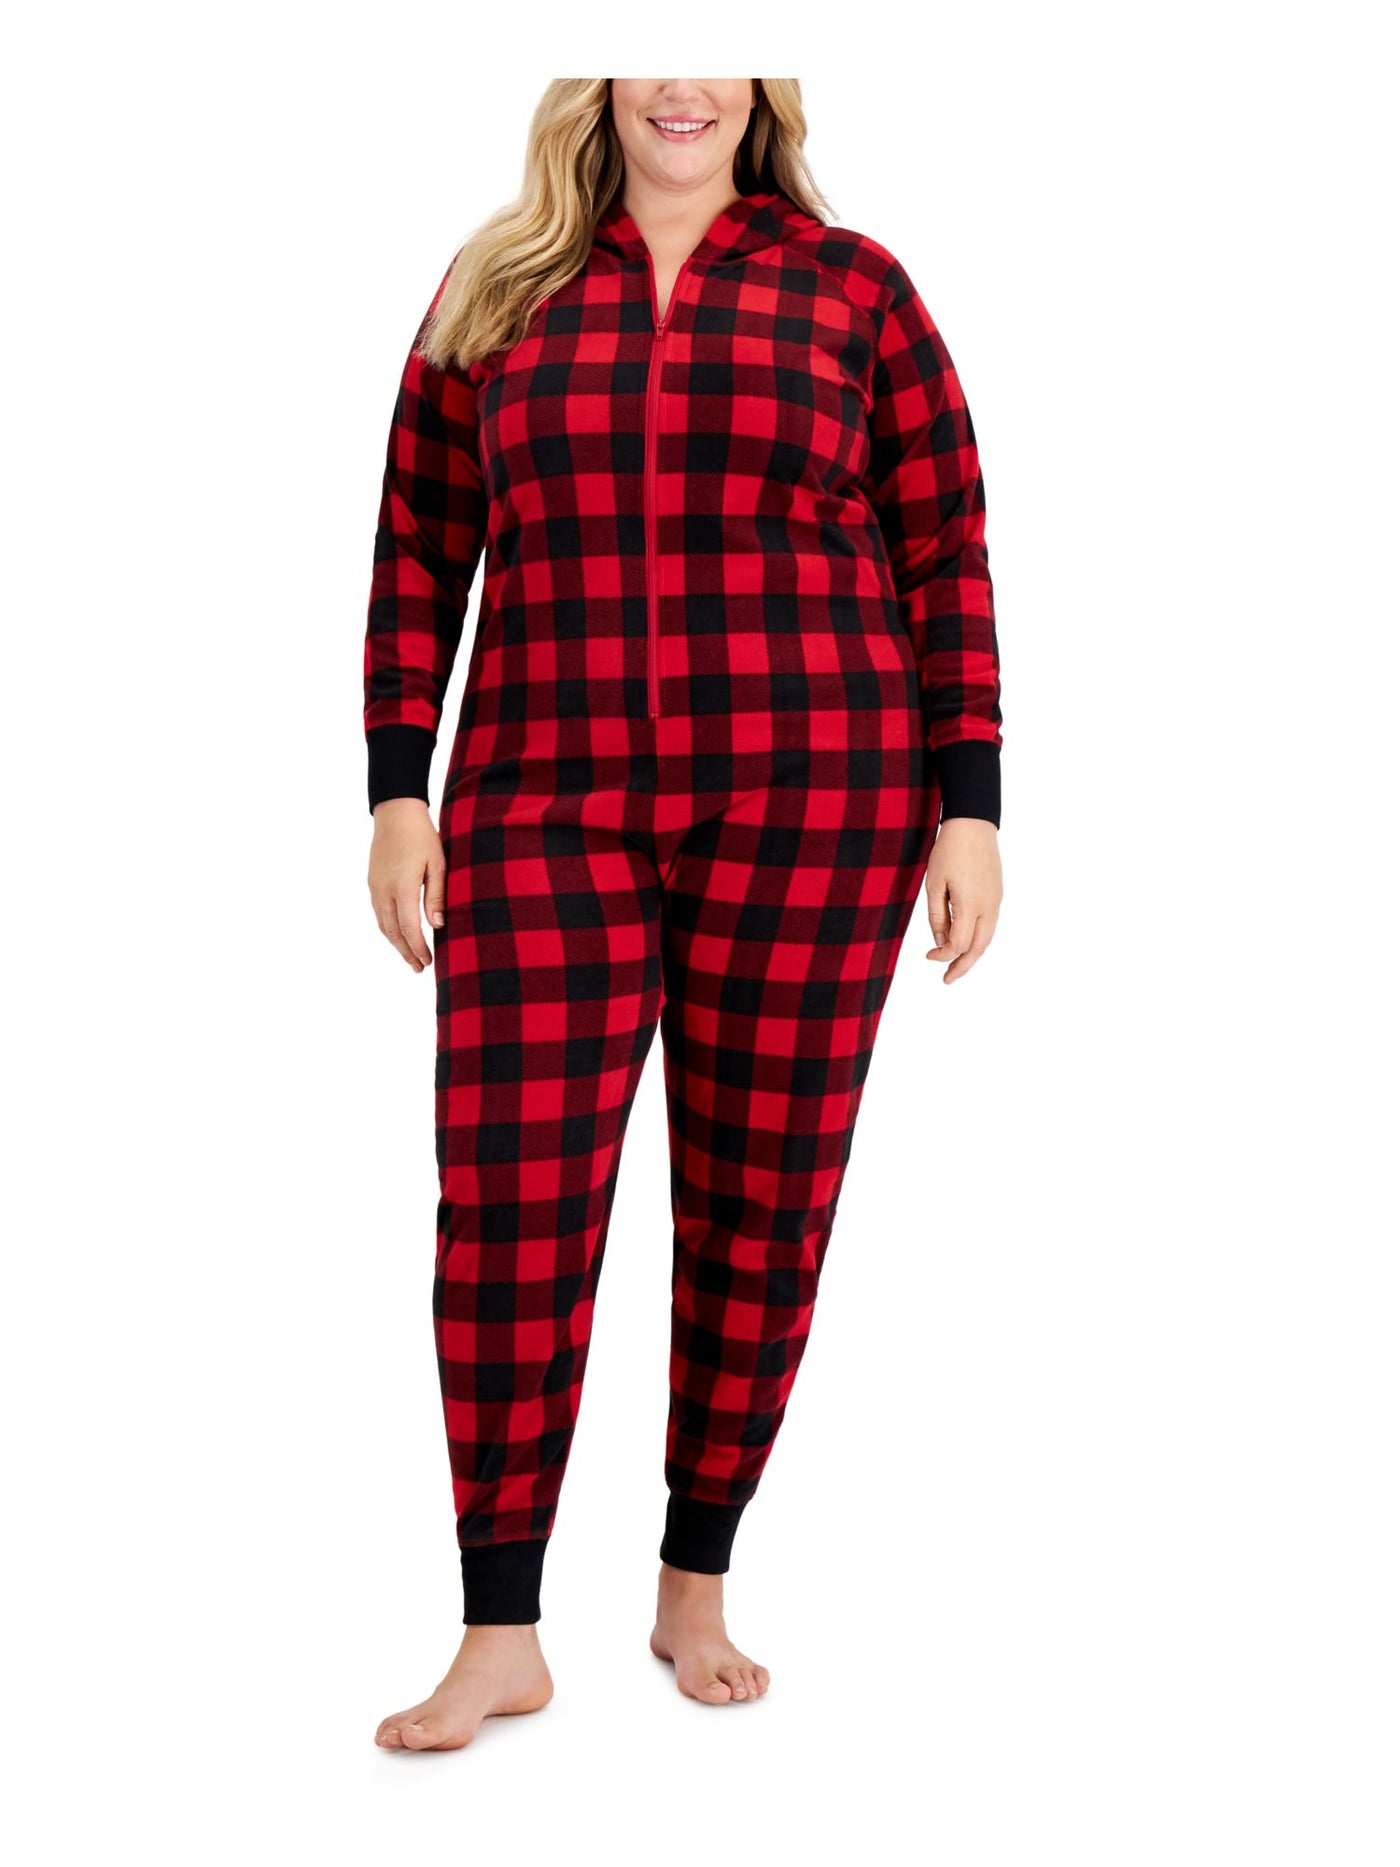 FAMILY PJs Intimates Red 1 Piece Cuffed Fleece Pajamas Plus 1X